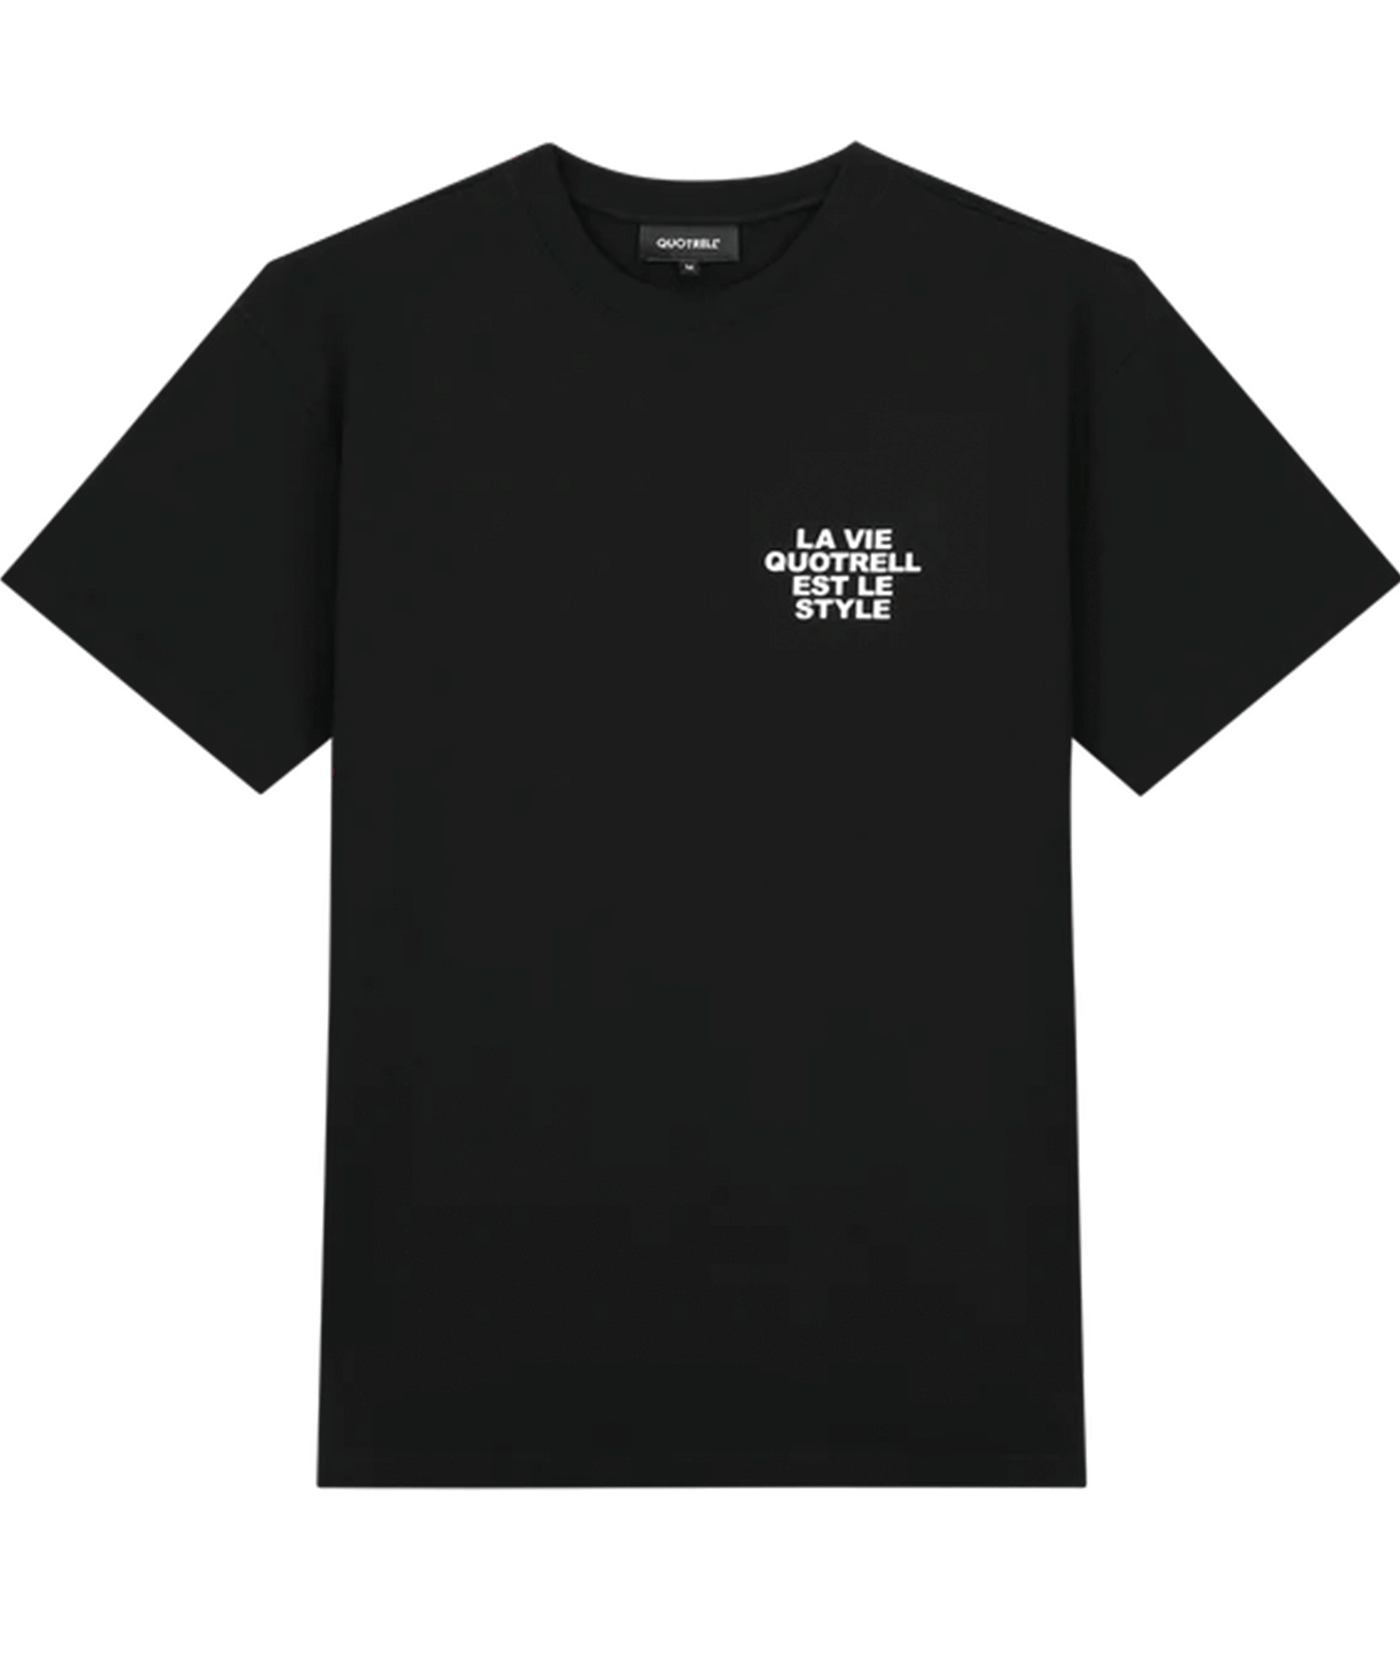 Quotrell - La Vie - T-shirt - Black/white